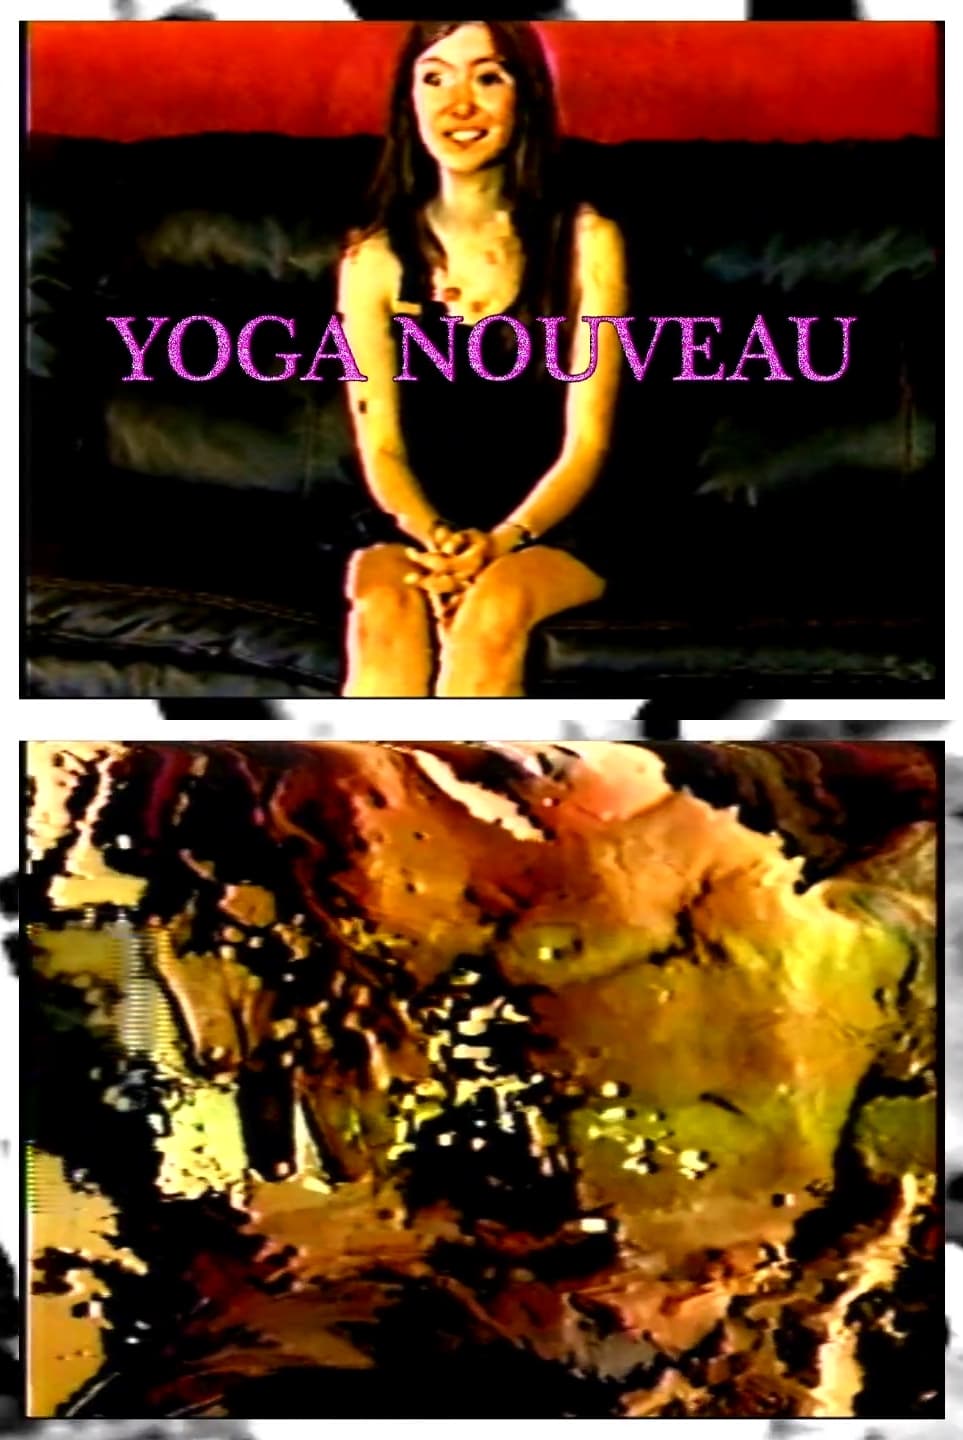 Yoga Nouveau